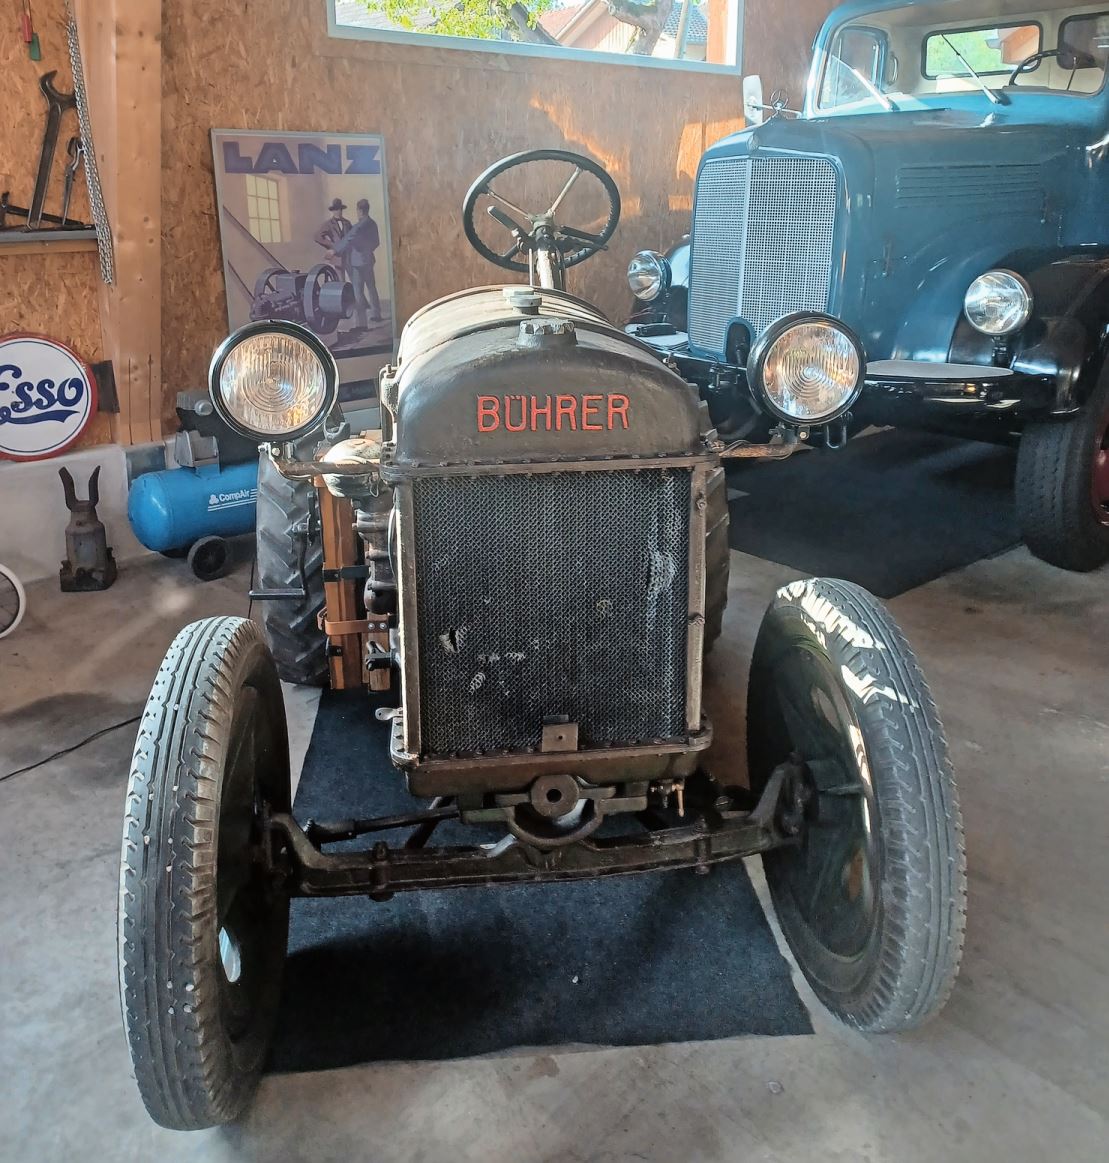 Der Tägerwiler besitzt einen 100-jährigen Bührer-Traktor.